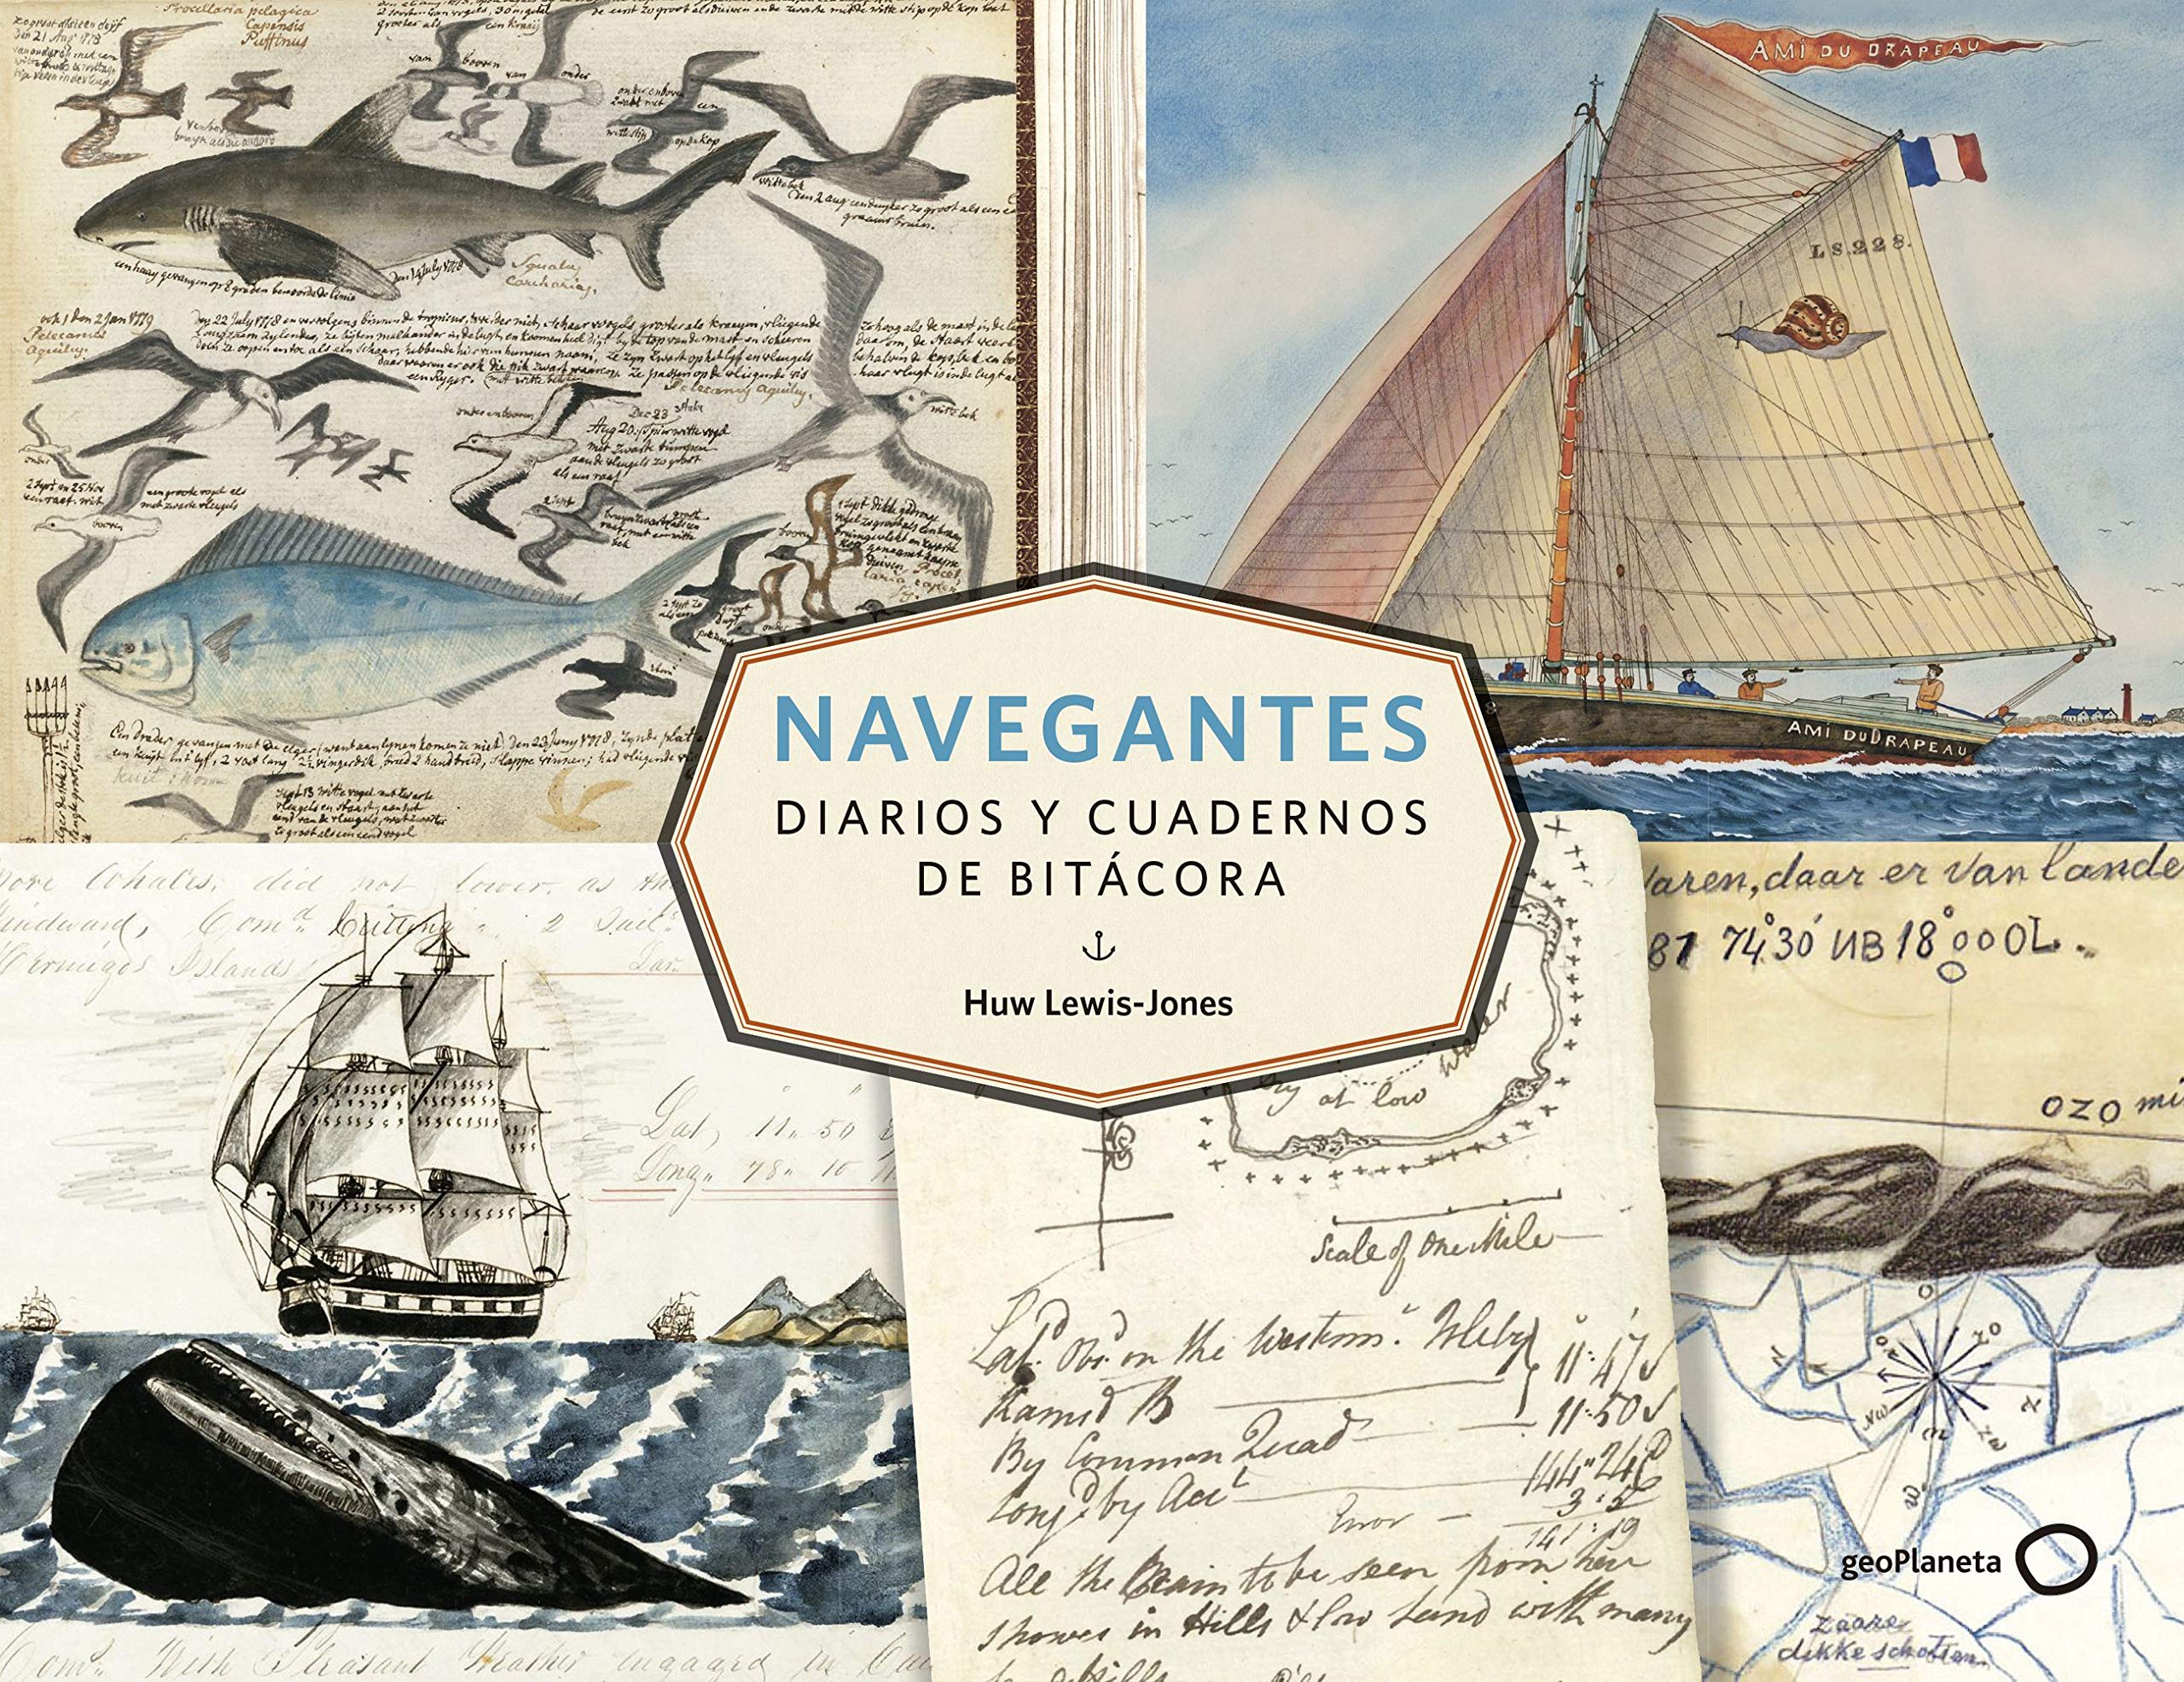 Zenda recomienda: Navegantes: Diarios y cuadernos de bitácora, de Huw Lewis-Jones